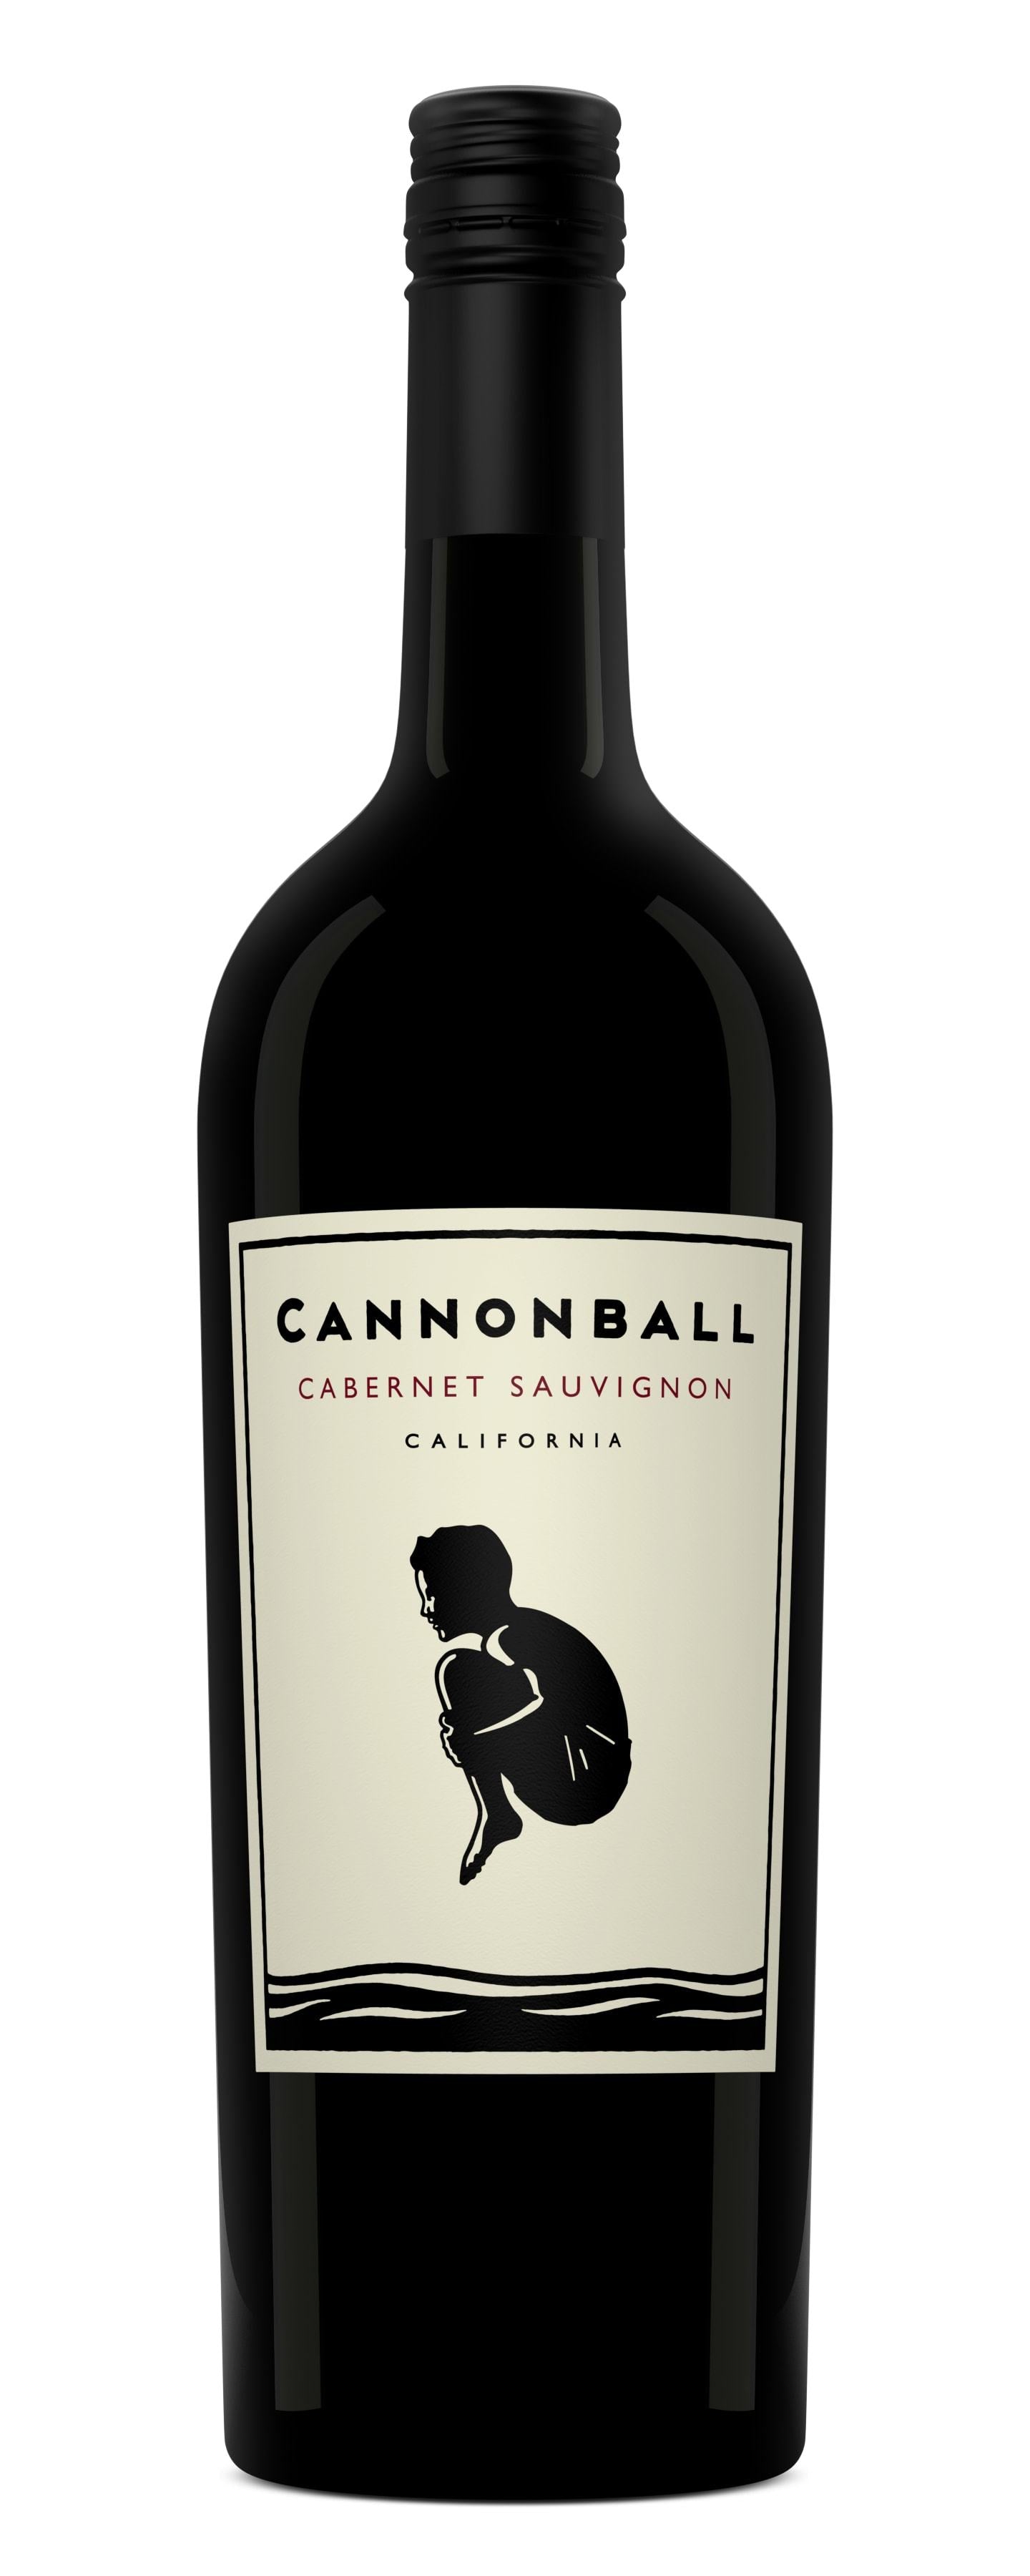 Cannonball Cabernet Sauvignon 2017